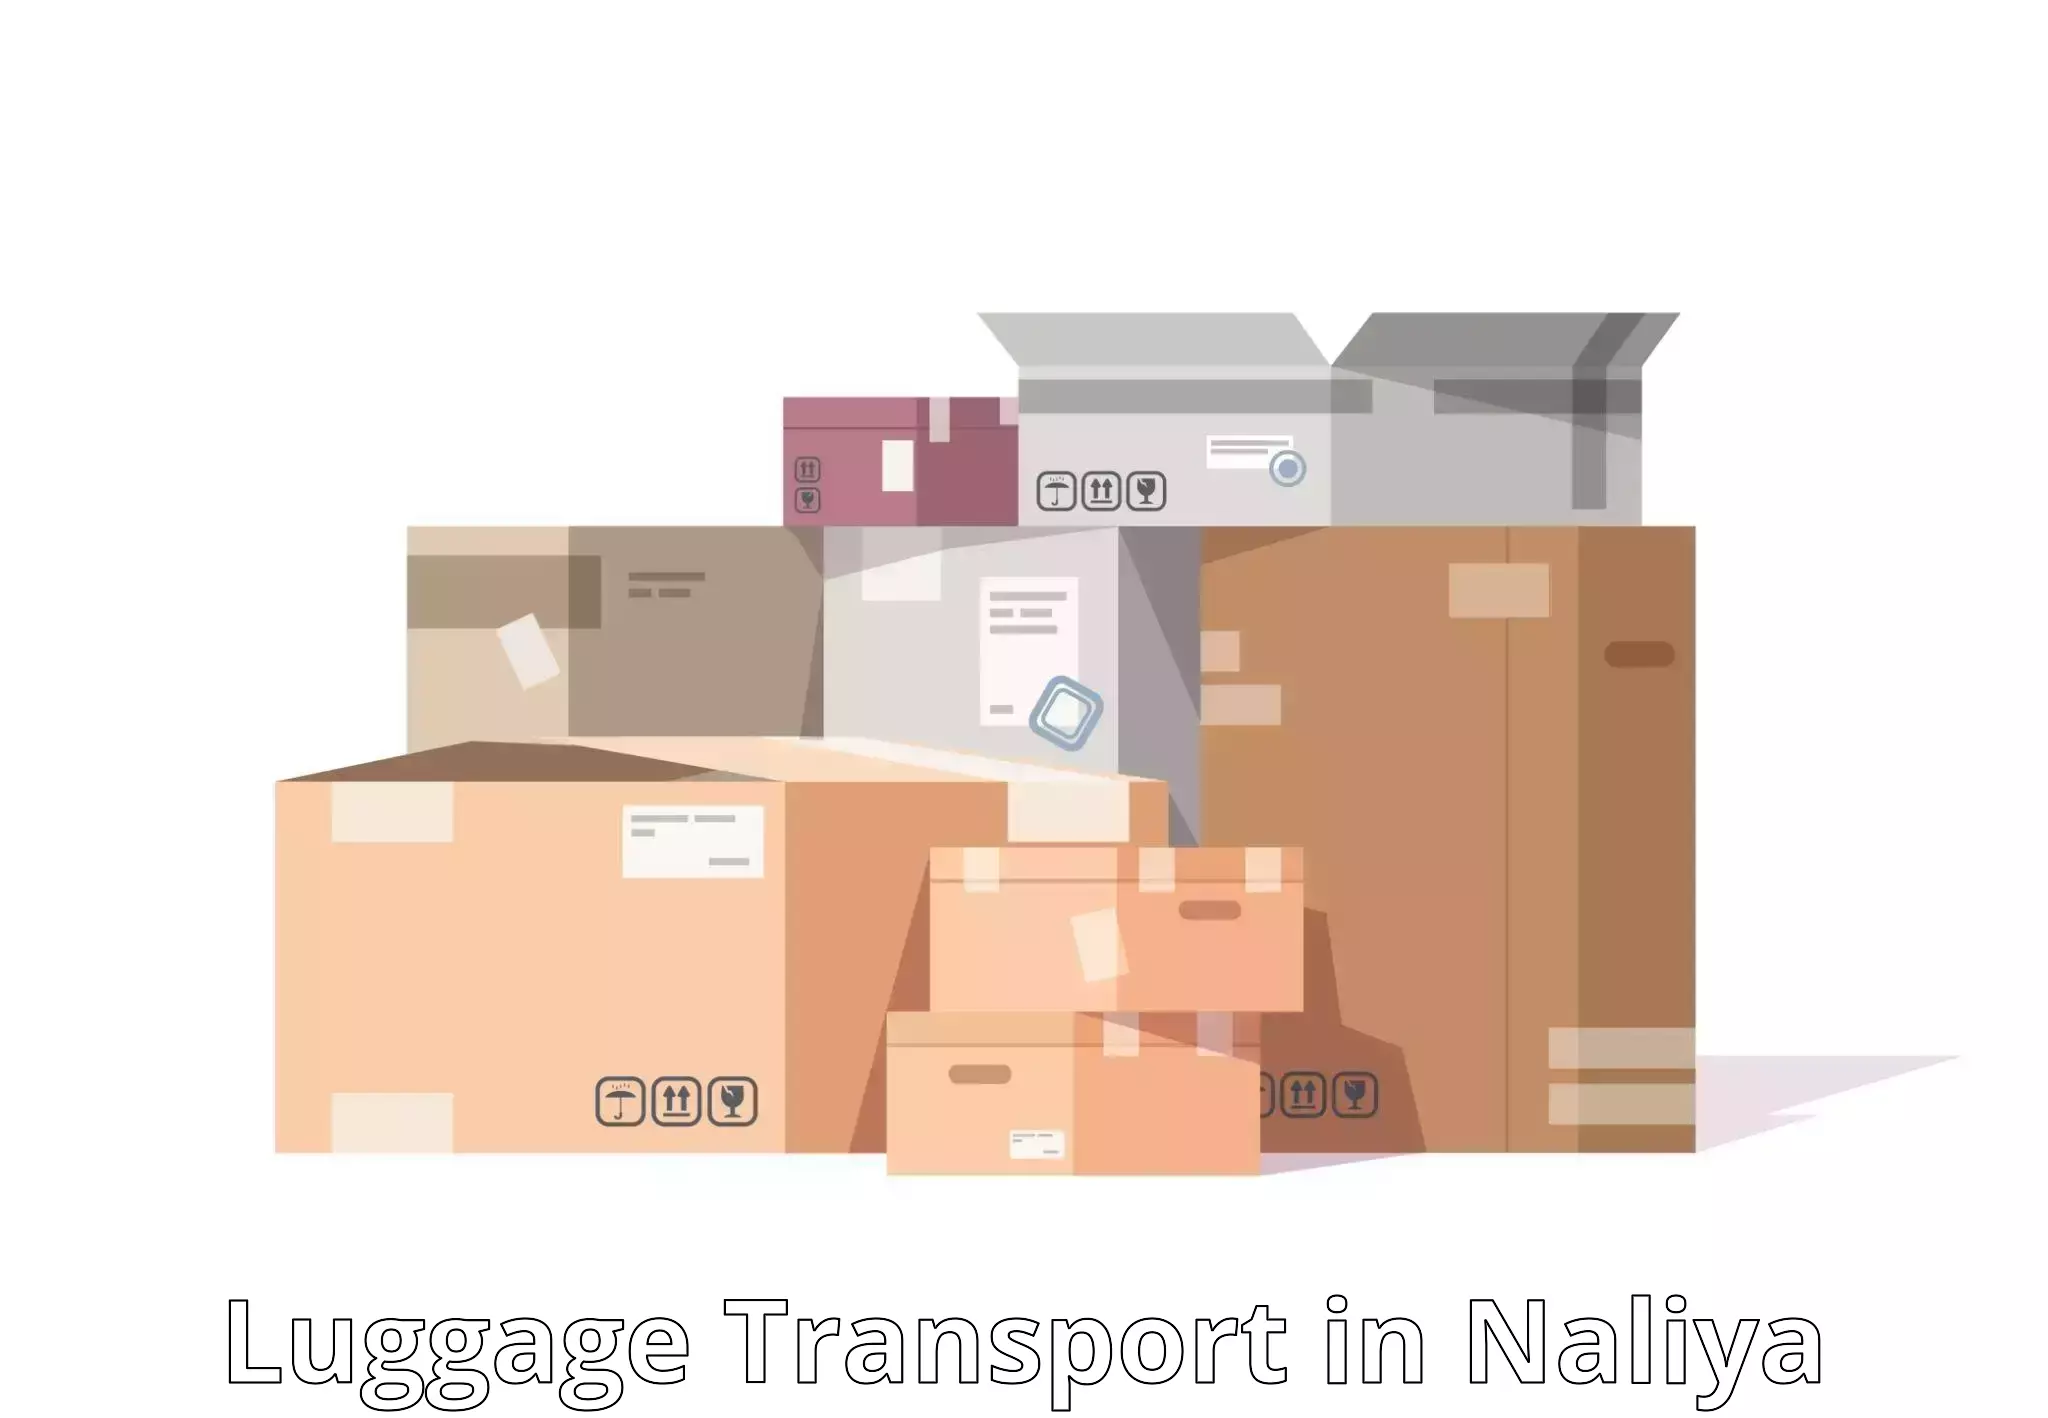 Baggage transport scheduler in Naliya